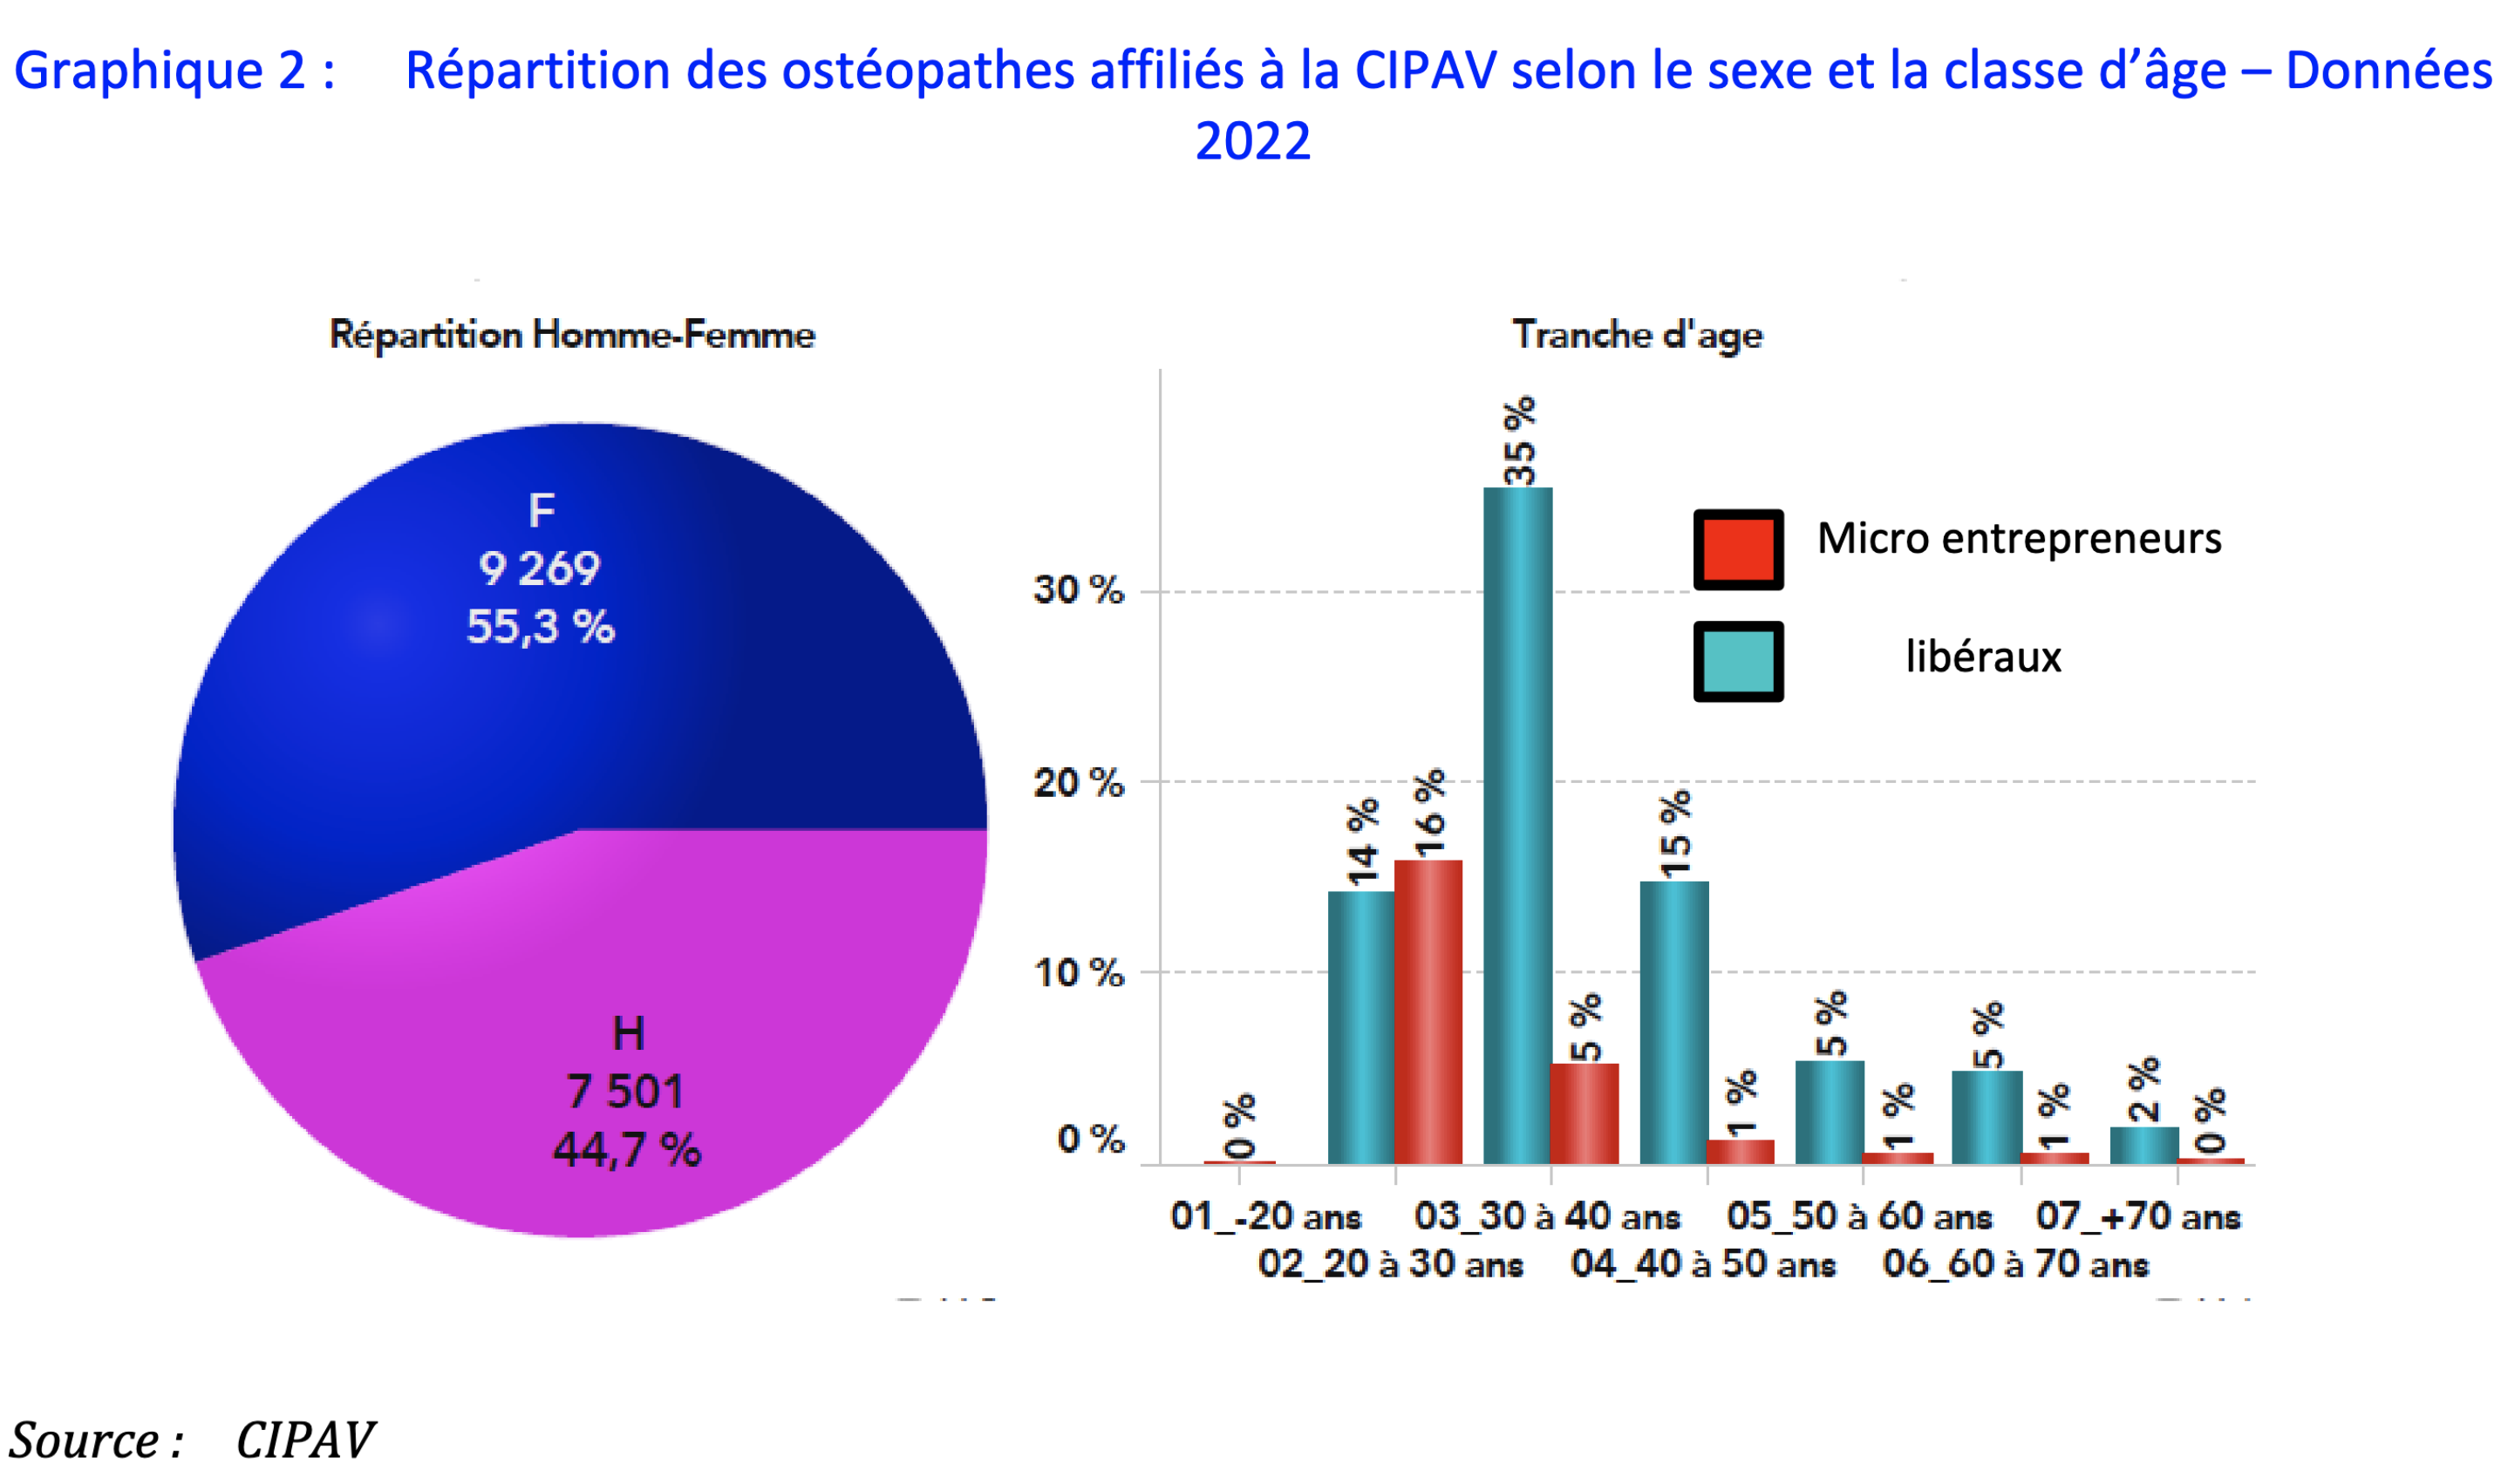 Répartition des ostéopathes affiliés à la CIPAV selon le sexe et la classe d’âge en 2022